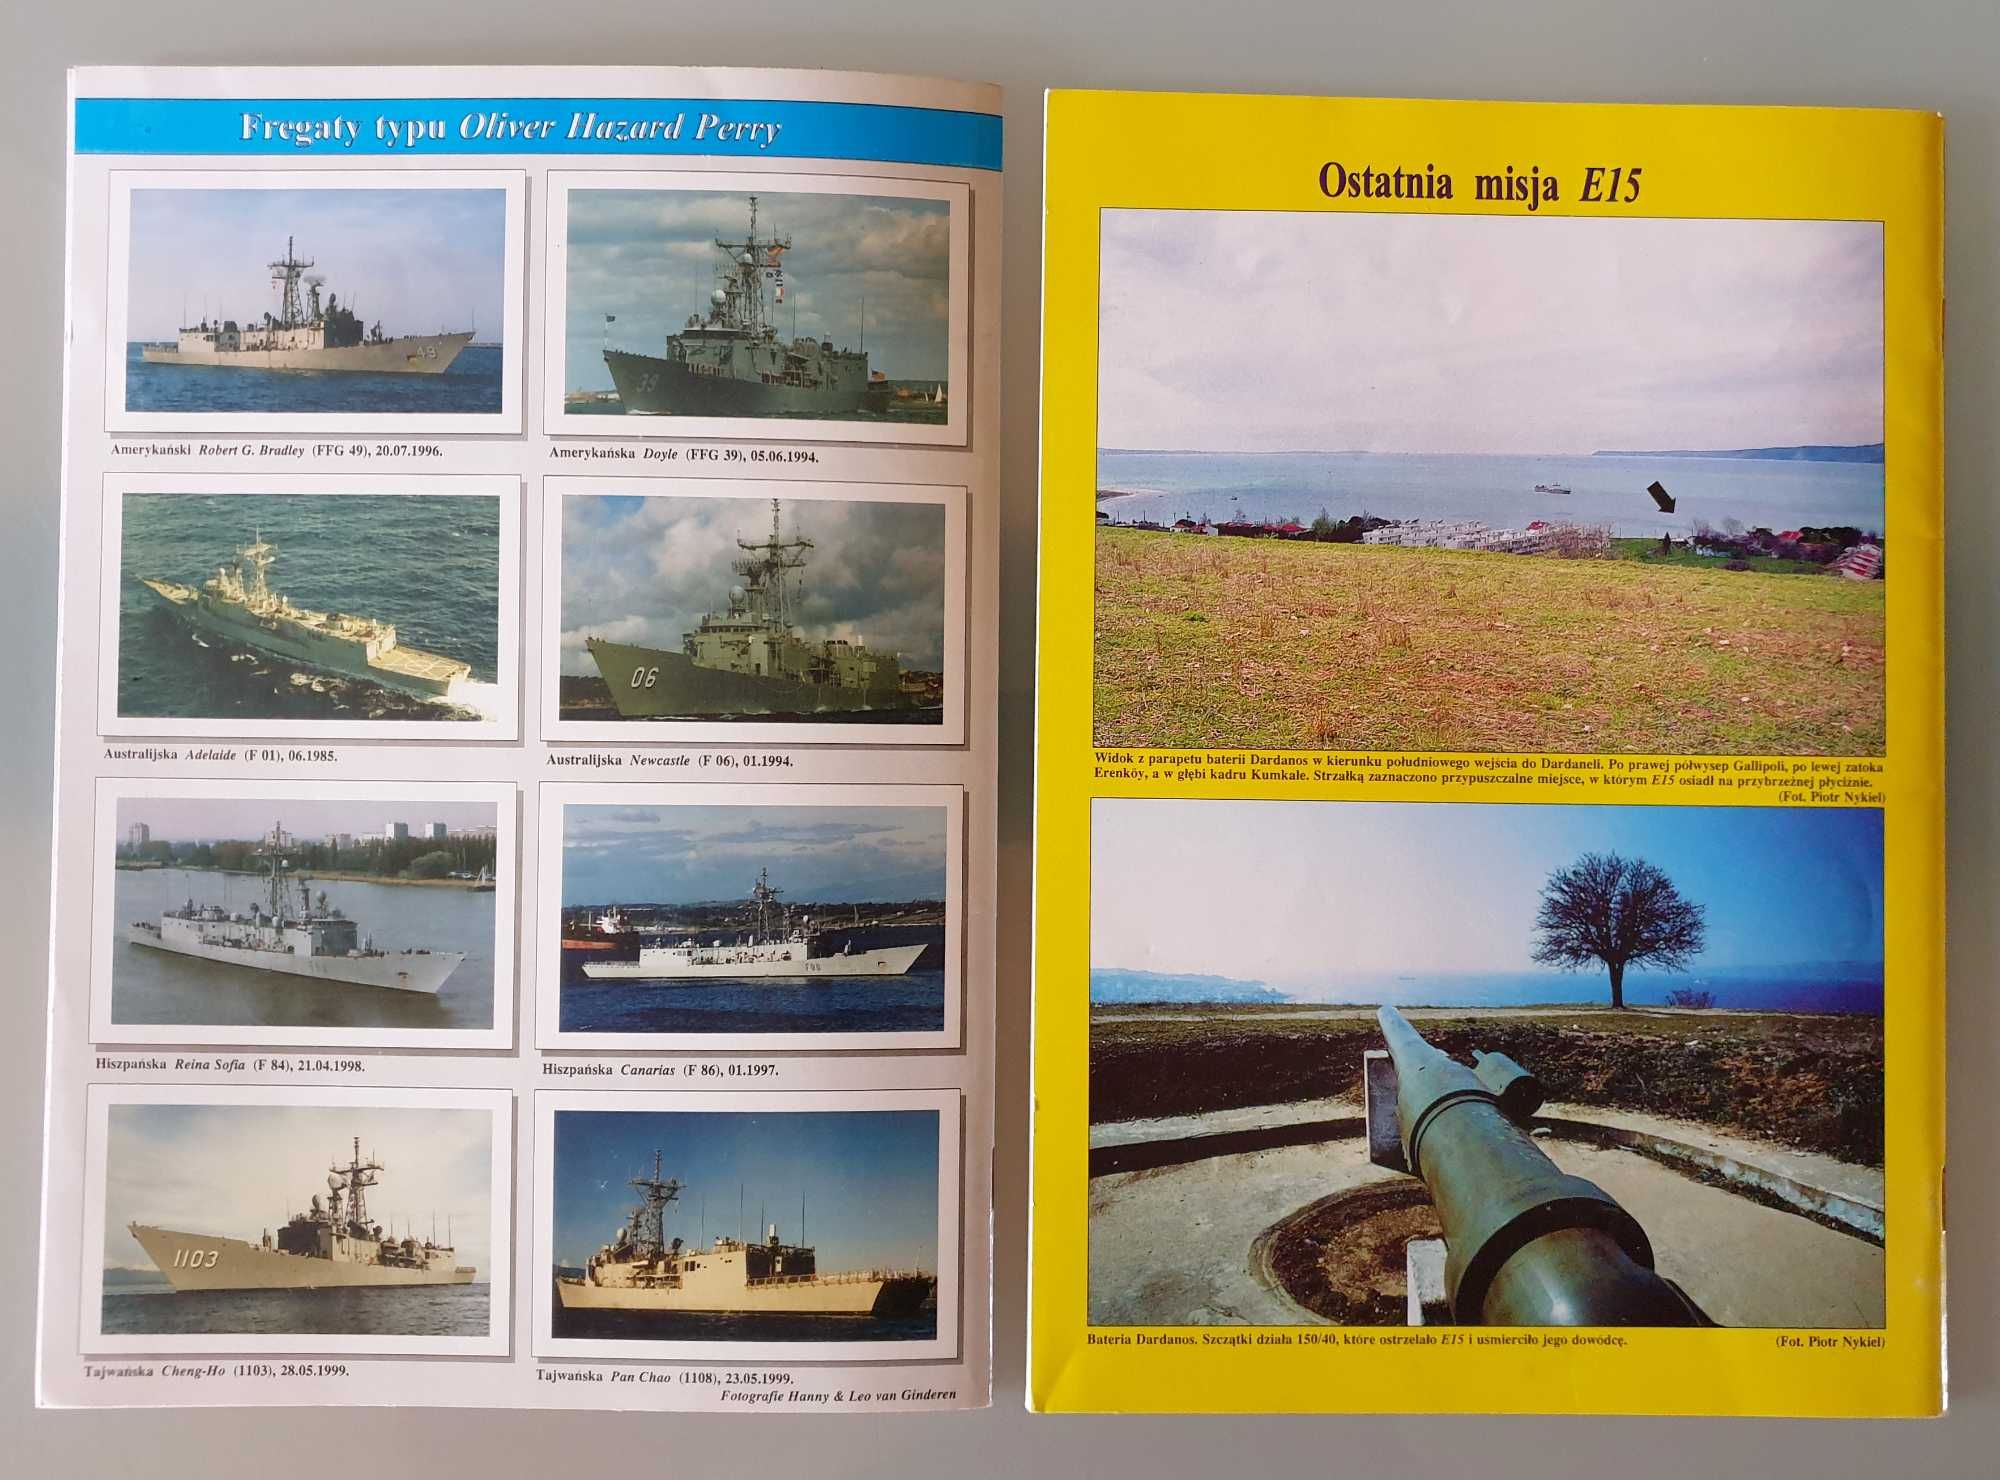 Magazyn "Okręty Wojenne" nr 7 (35) z roku 1999 i 1 (36) z roku 2000